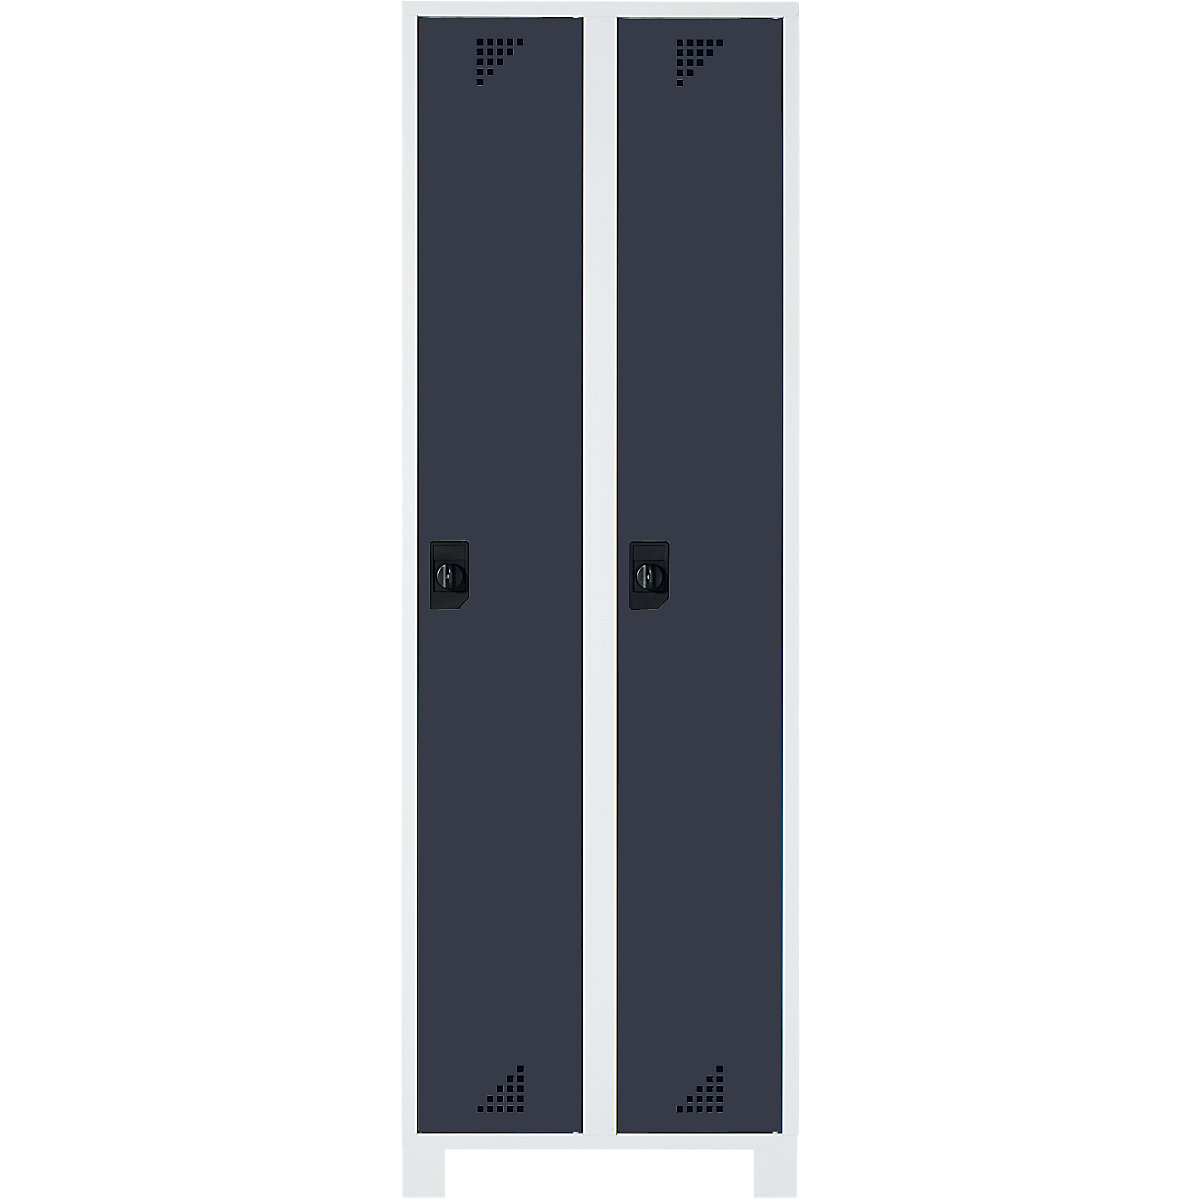 Öltözőszekrény és többfunkciós szekrény – eurokraft pro, fülkemagasság 1695 mm, 2 fülke, szélesség 800 mm, világosszürke váz, antracitszürke ajtók-5